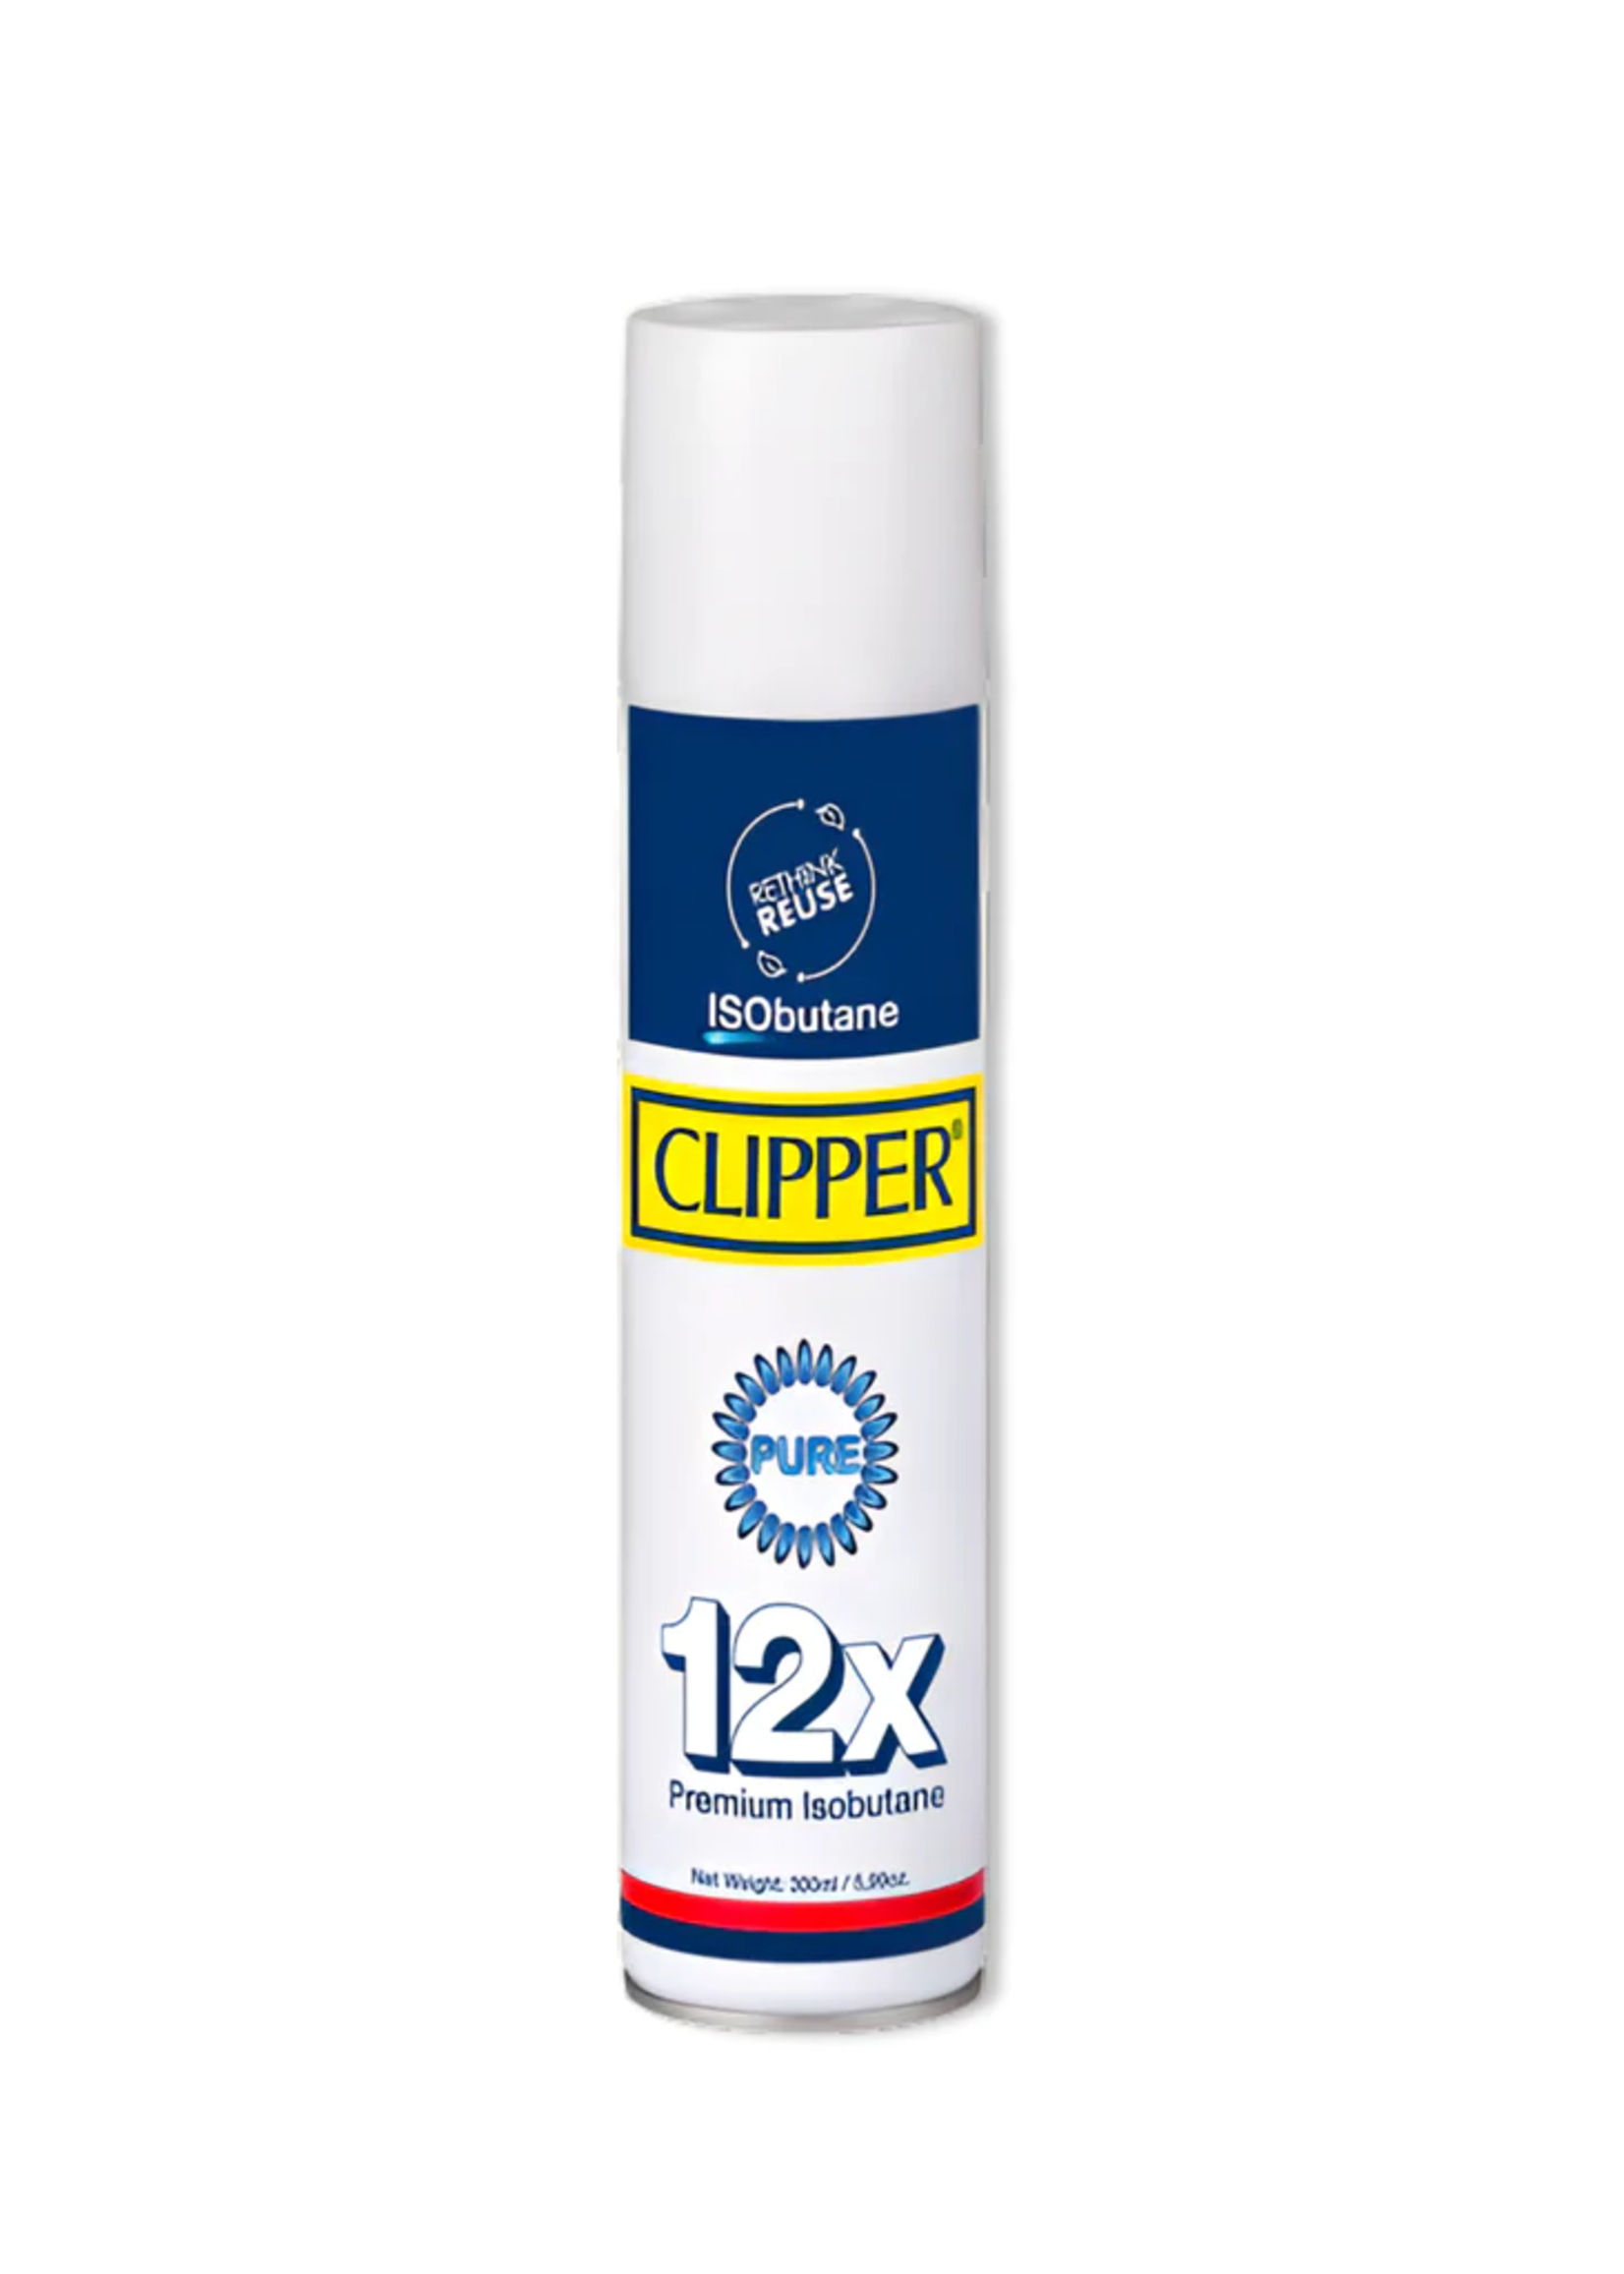 CLIPPER GAS BUTANO CLIPPER